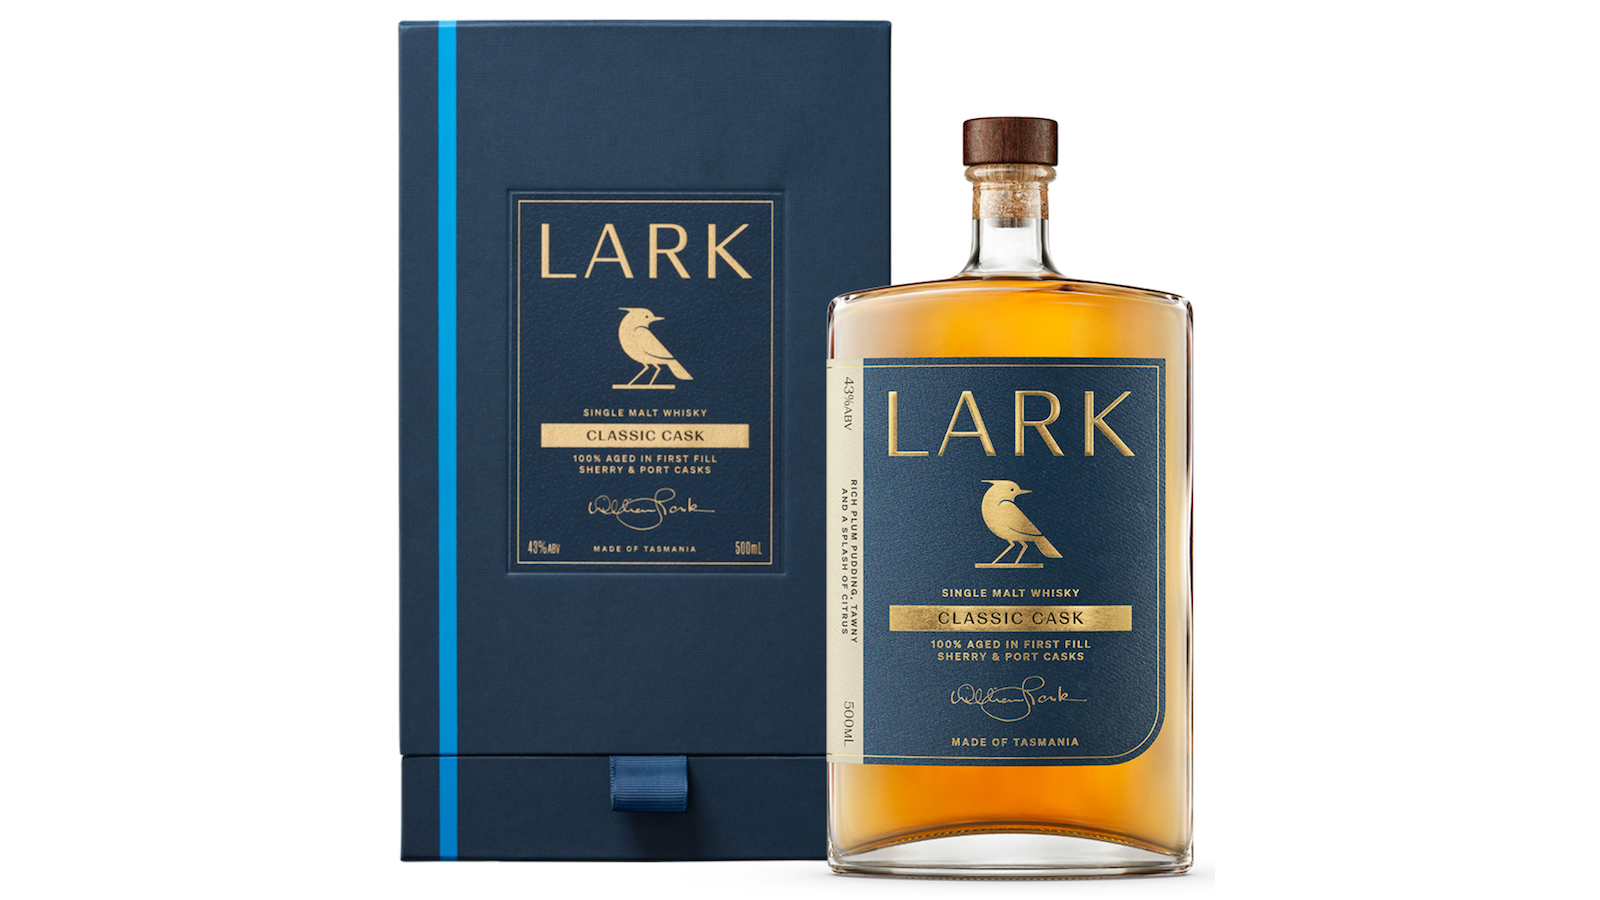 Lark Classic Cask Single Malt whisky